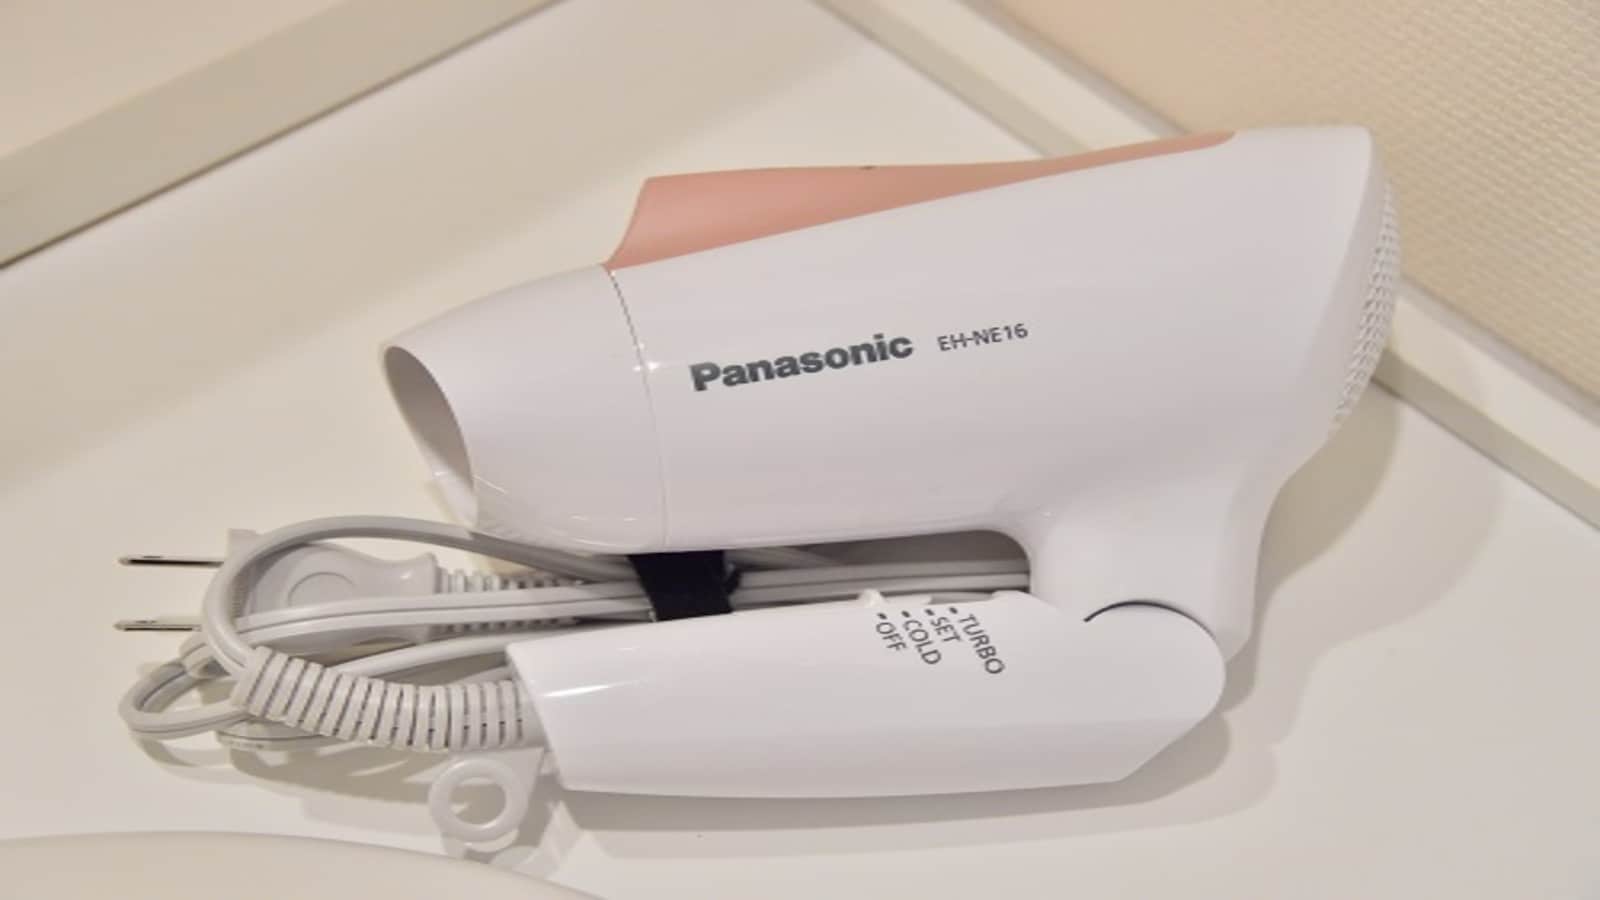 ◆ Room equipment Hair dryer (Panasonic)